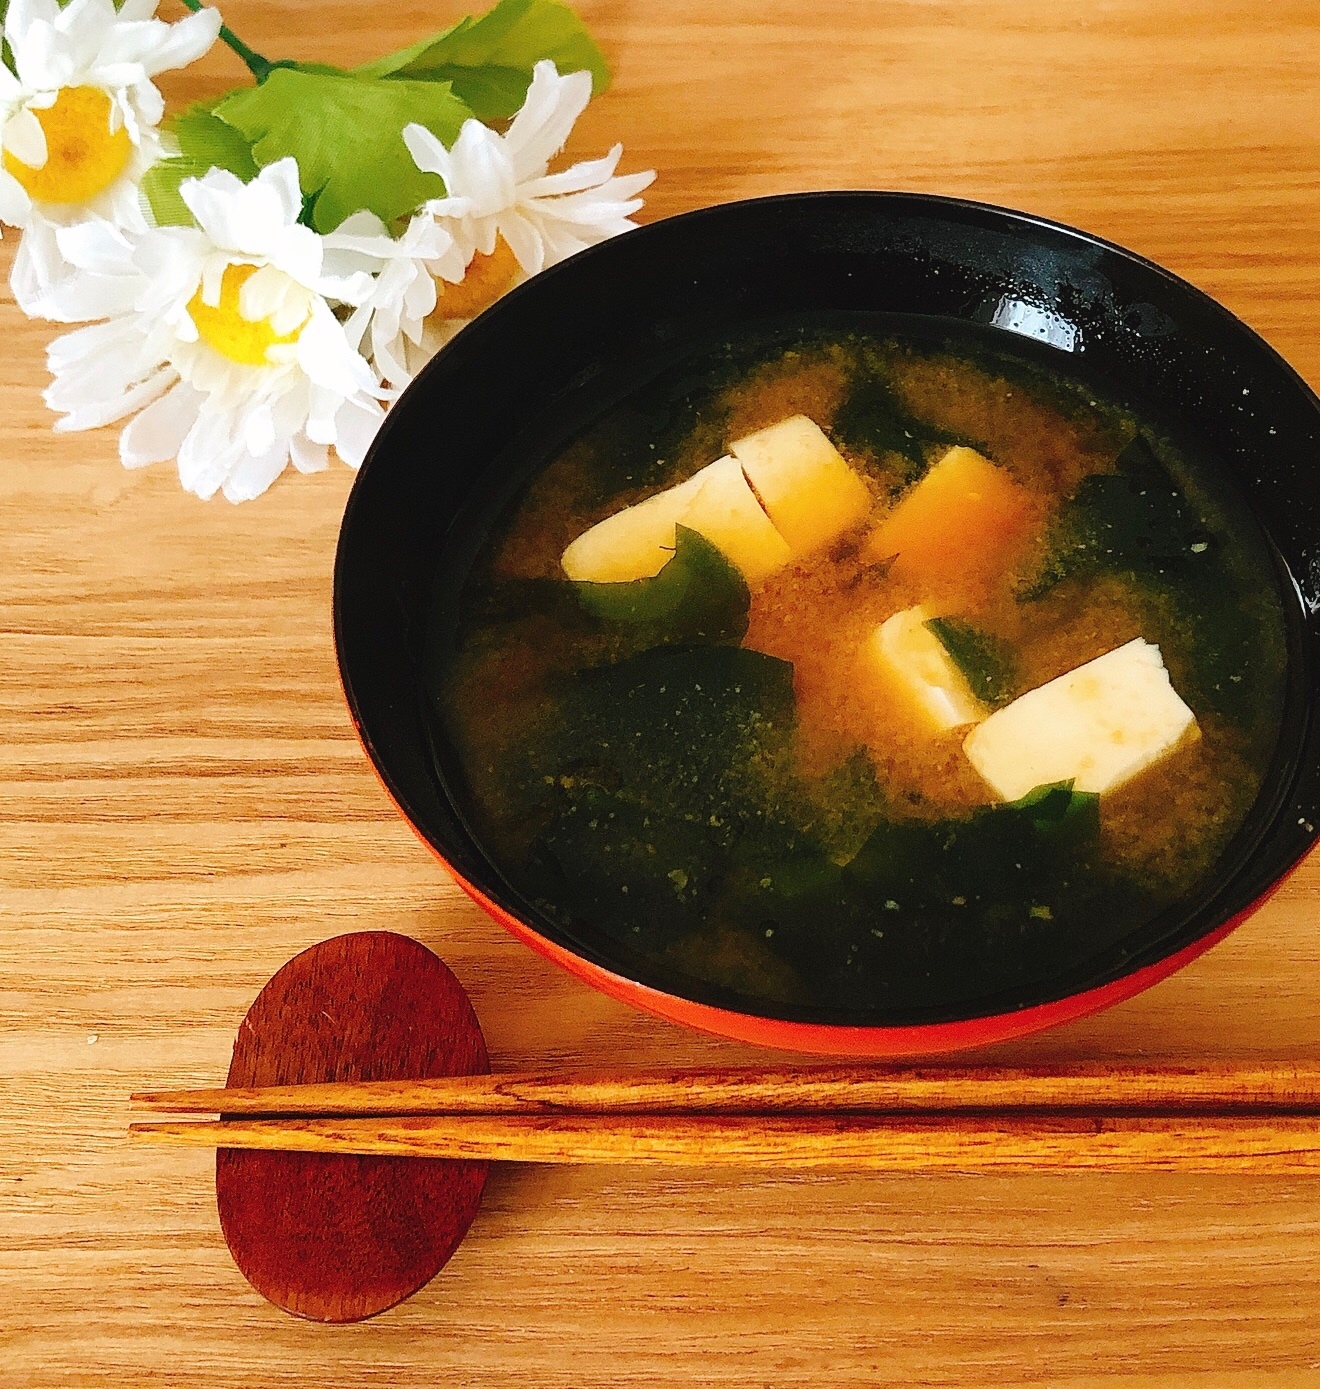 こくと深みの味わいꕤわかめと豆腐のお味噌汁✧˖°